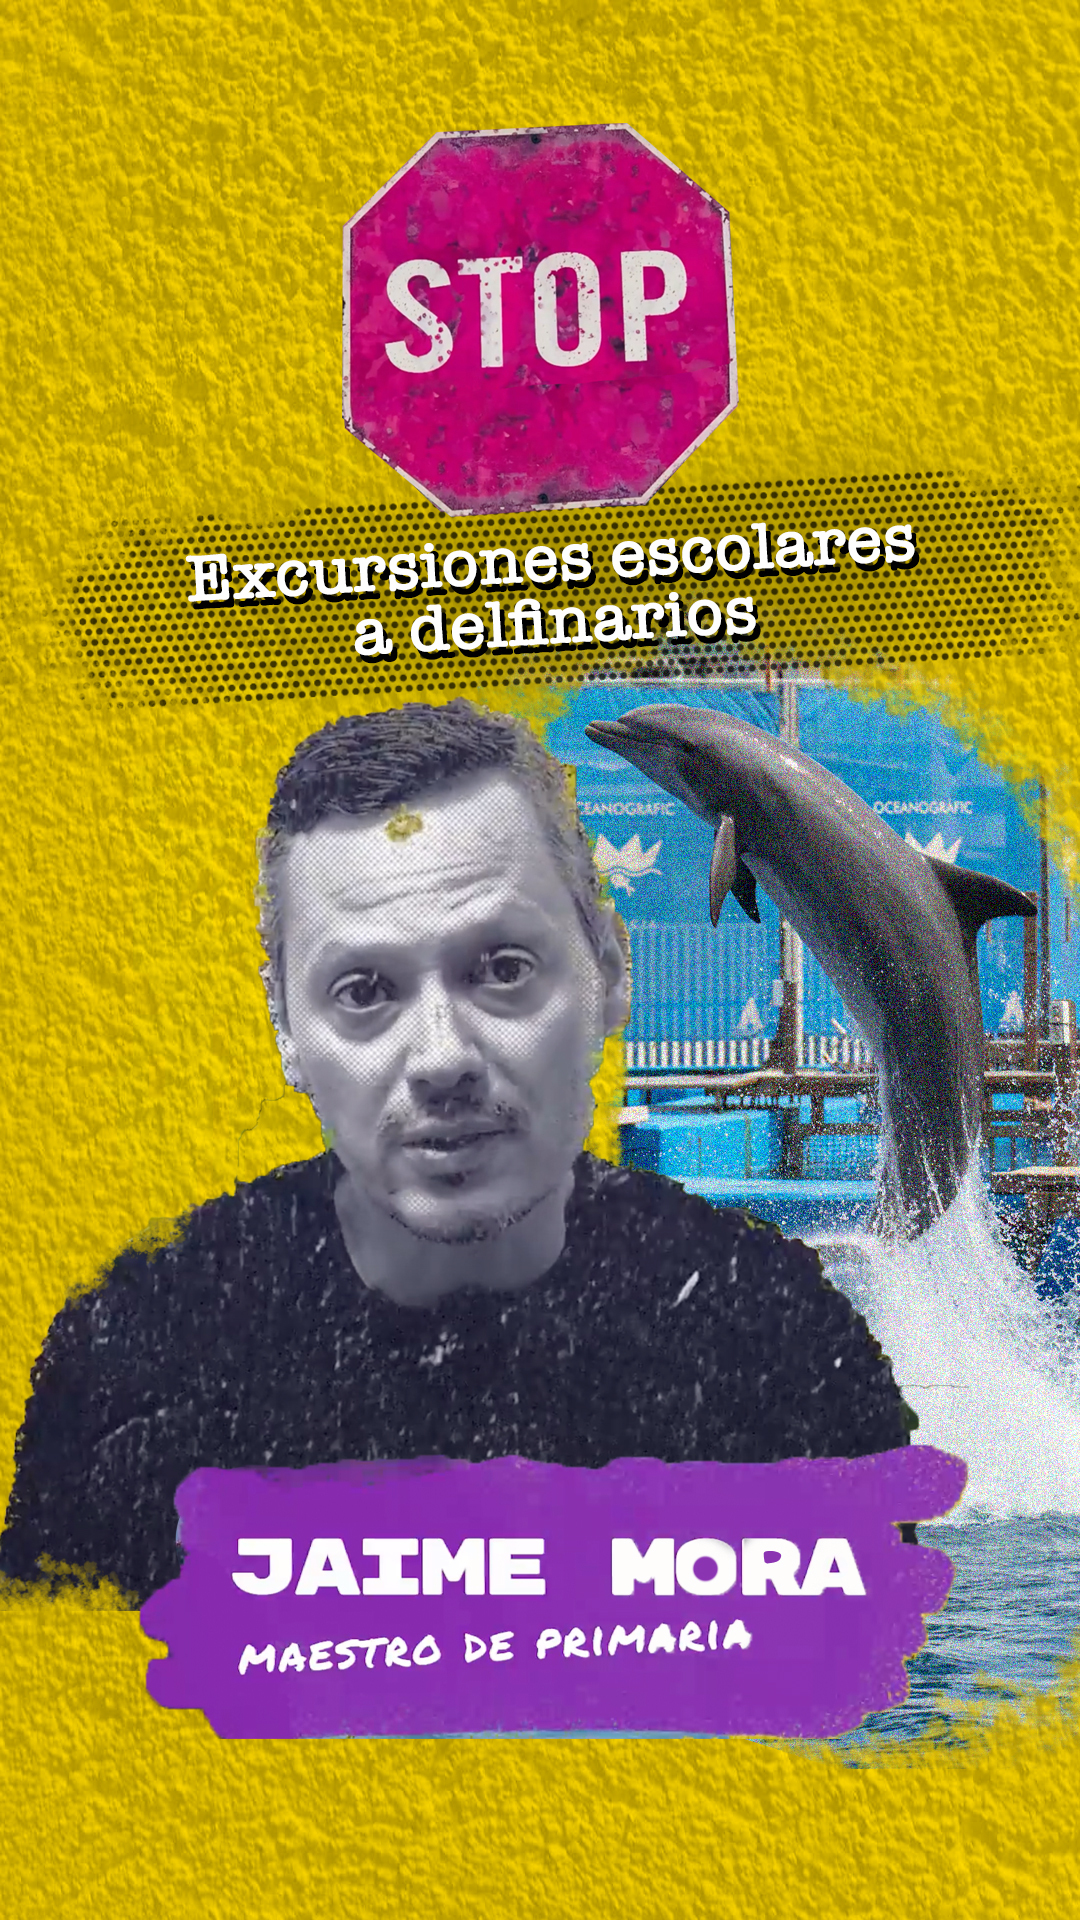 Un maestro valenciano se rebela contra las excursiones escolares a delfinarios